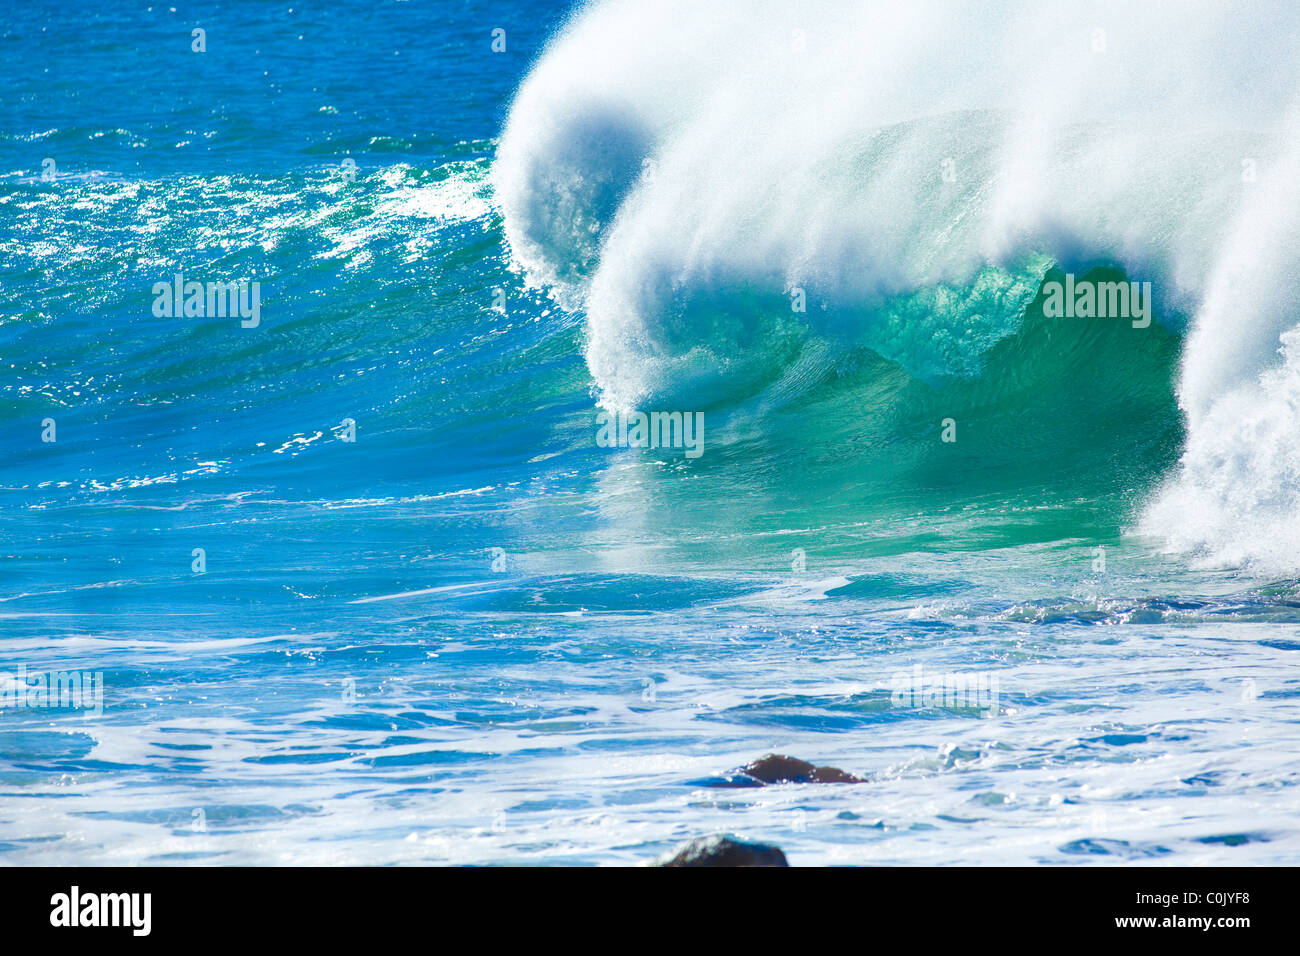 Surfing, Leeward Oahu, Hawaii Stock Photo